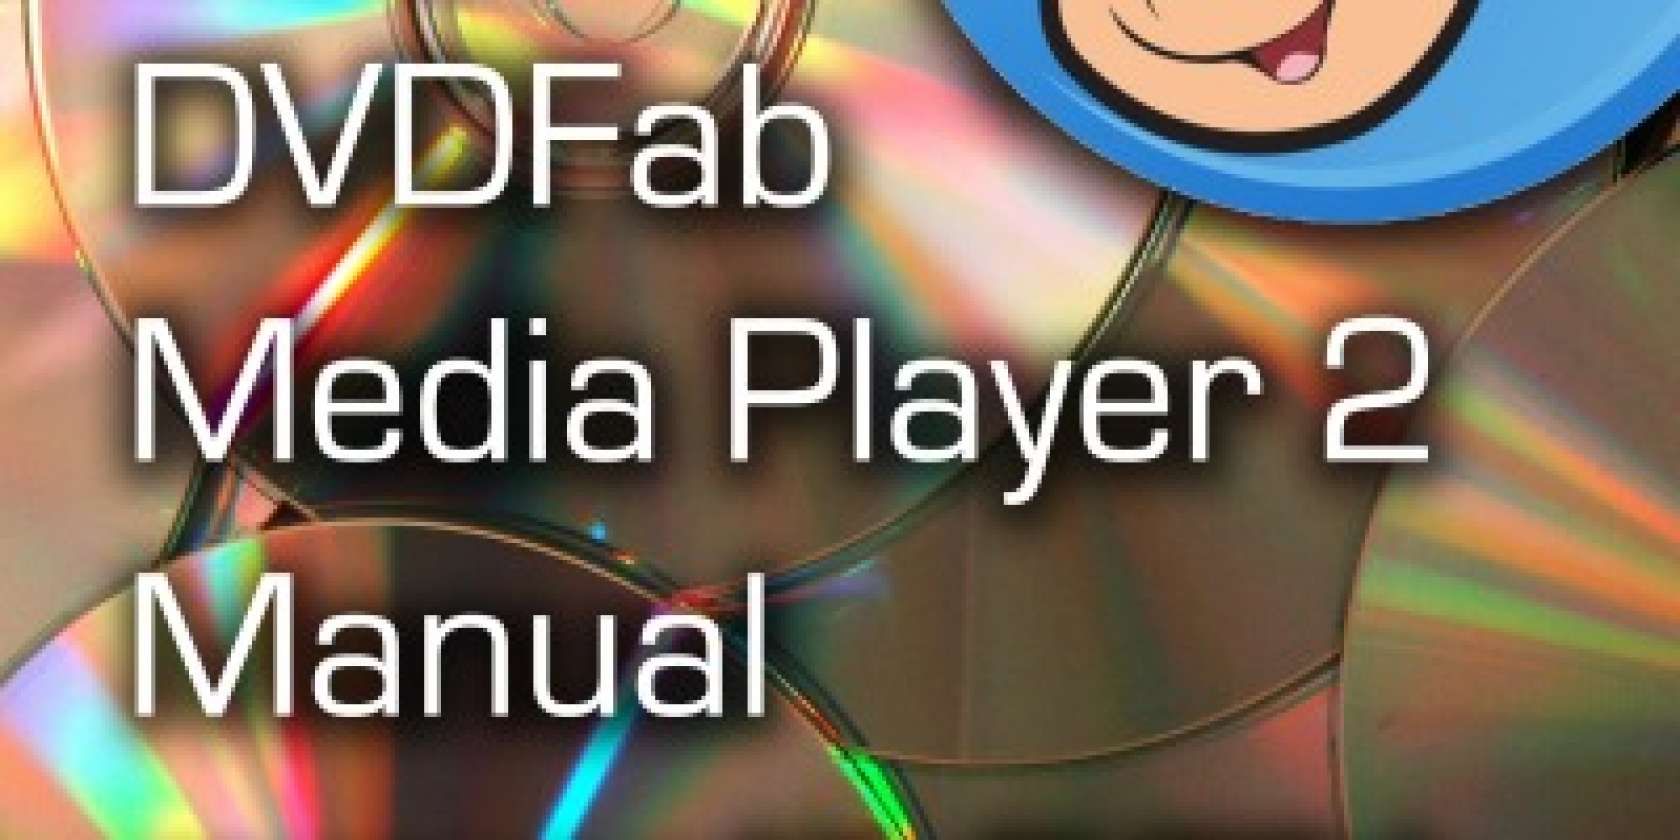 dvdfab media player 2 not starting